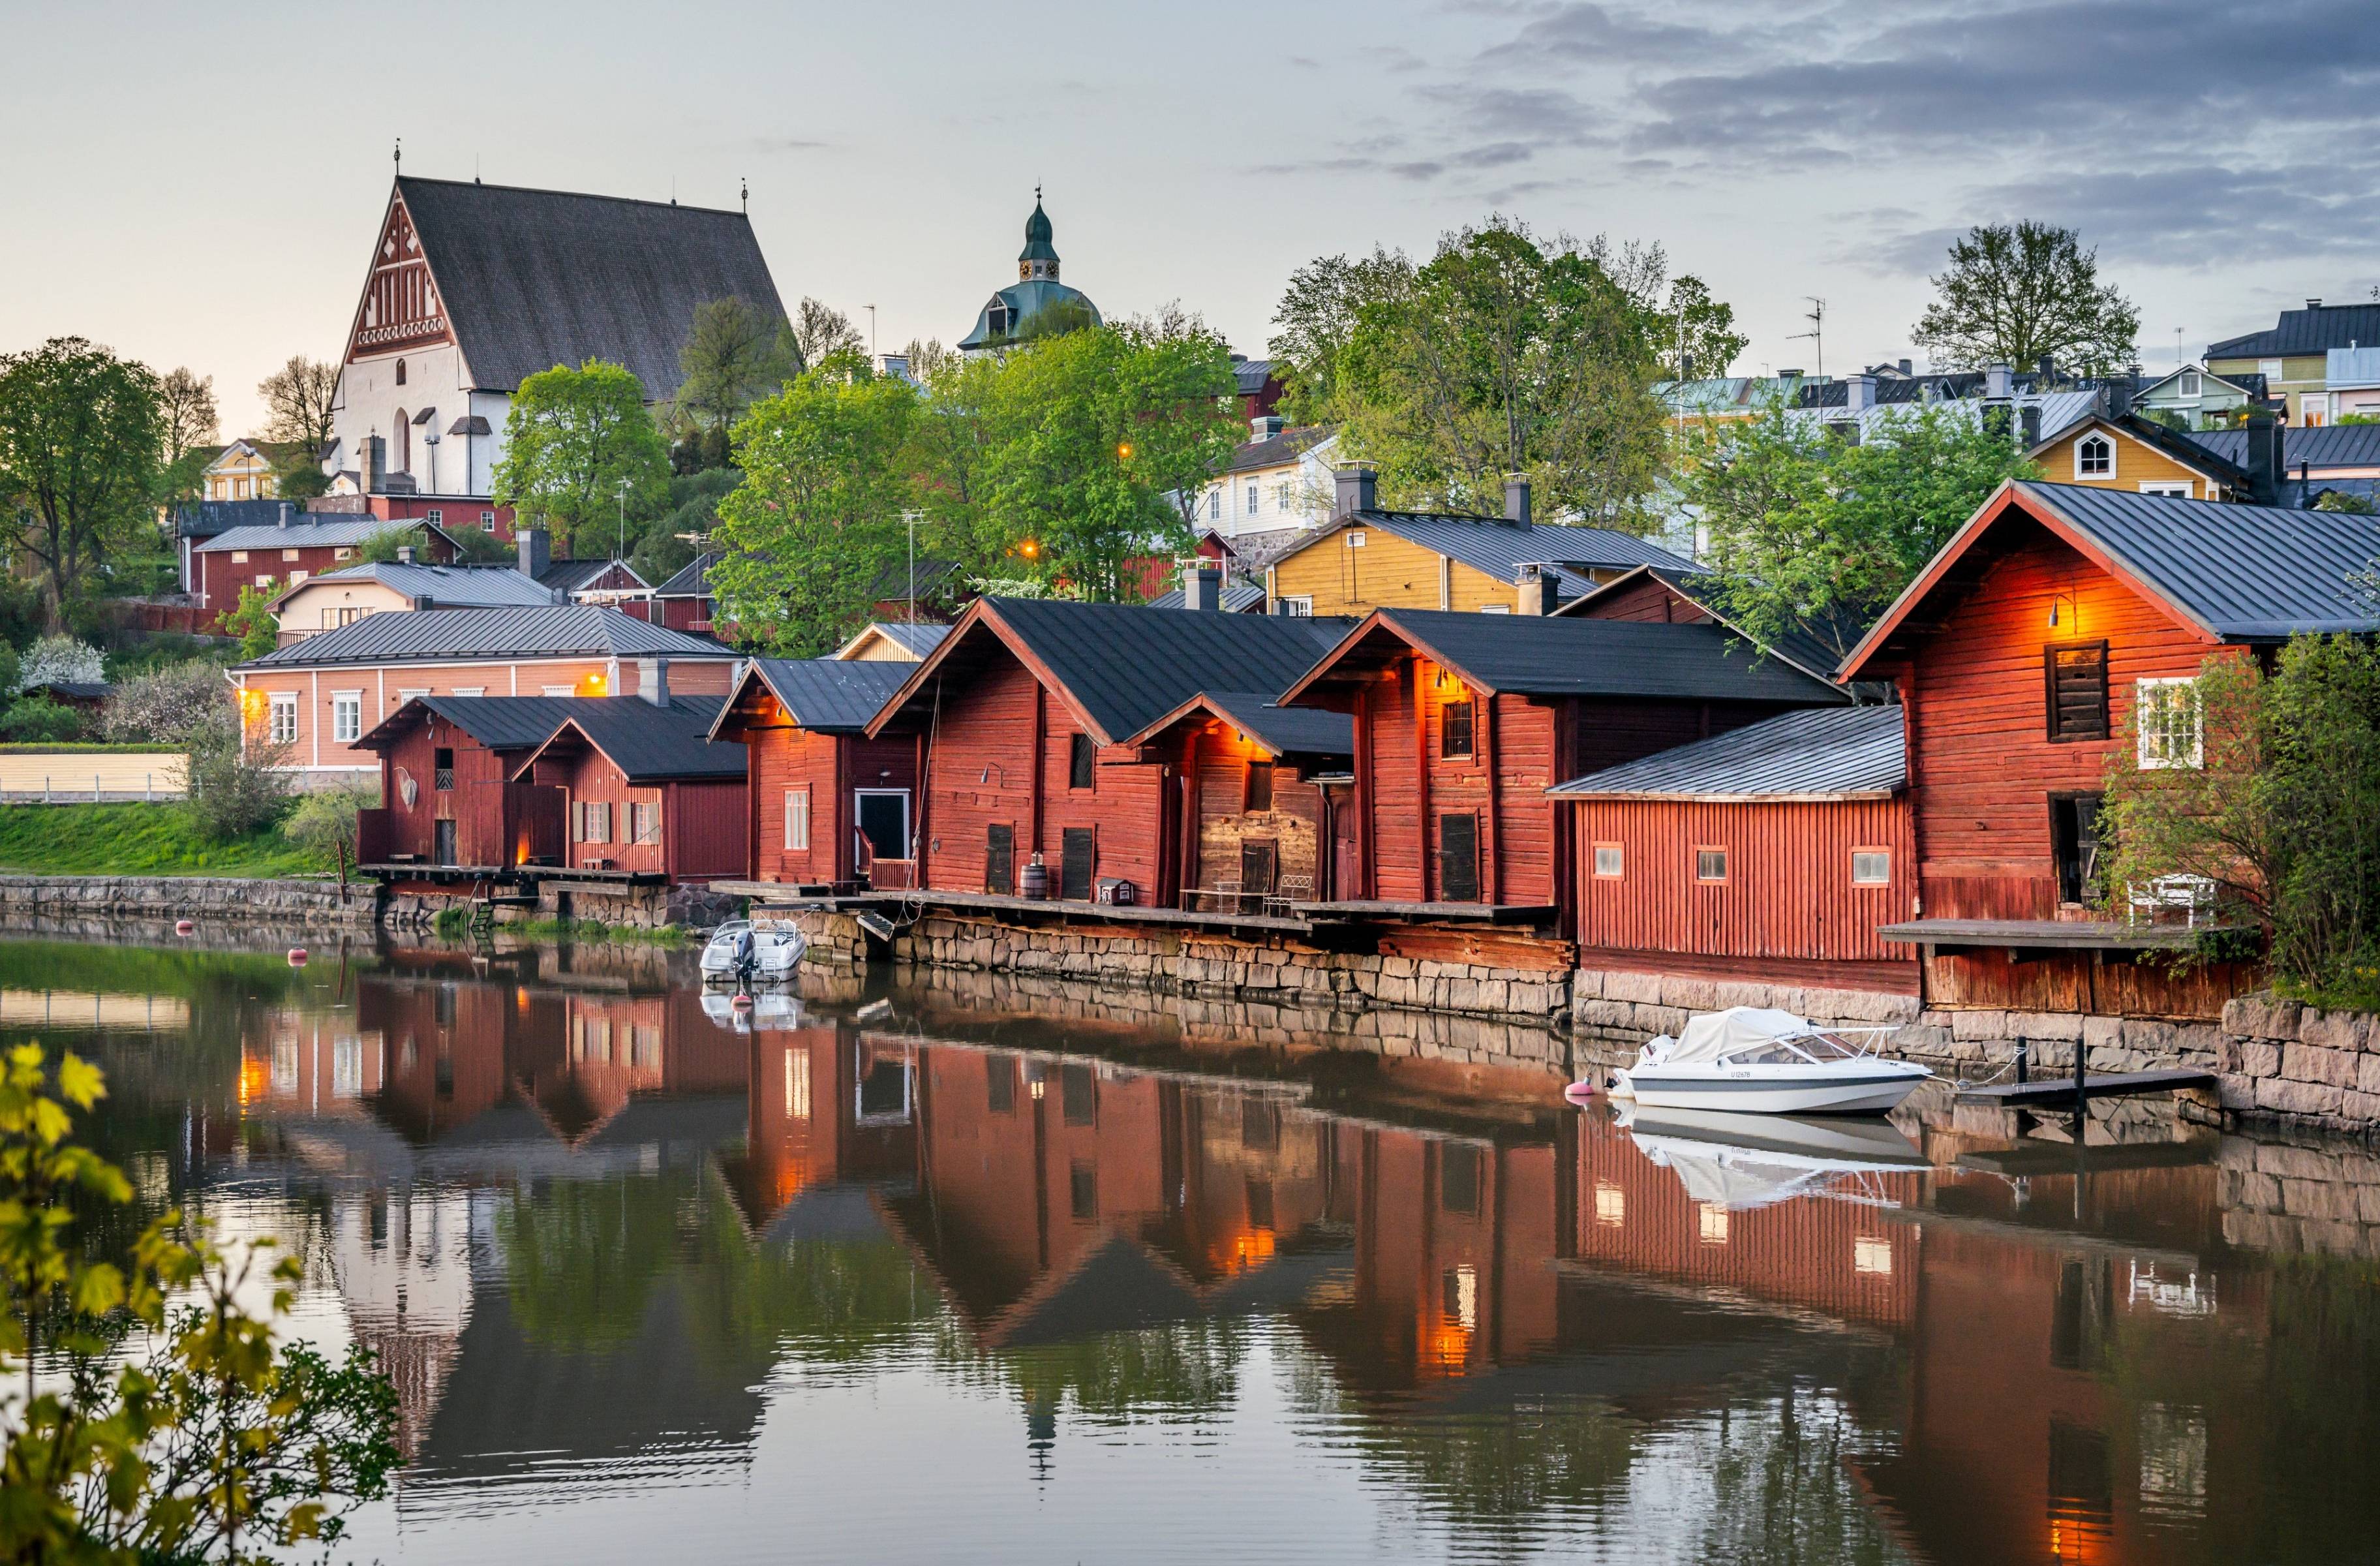 ¡Bienvenidos a Finlandia! Pueblito idílico de Porvoo y estancia en una casa costena típica